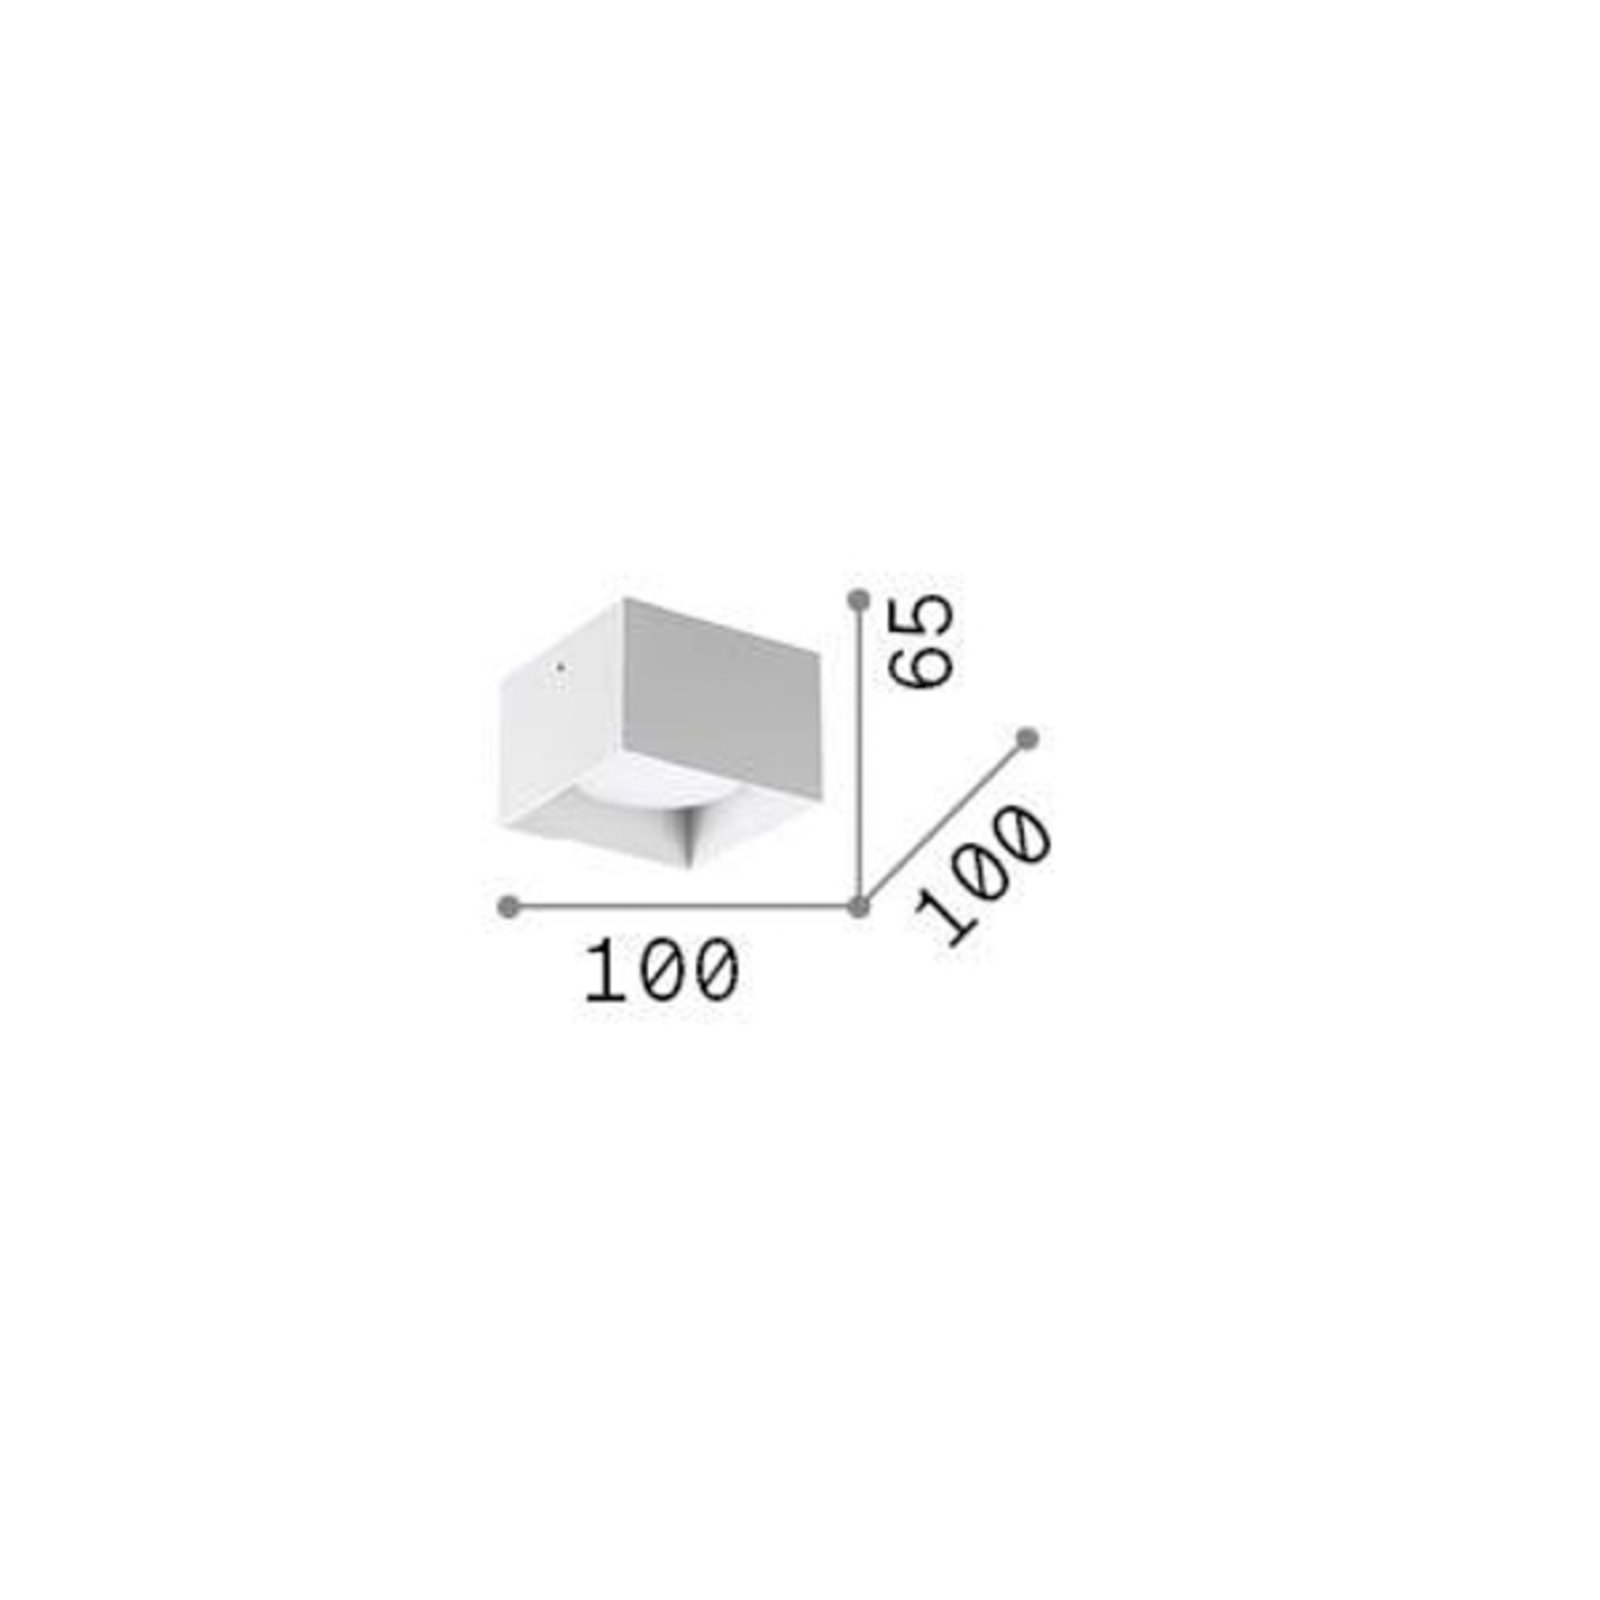 Ideal Lux downlight Spike Square, chroomkleurig, aluminium, 10x10 cm